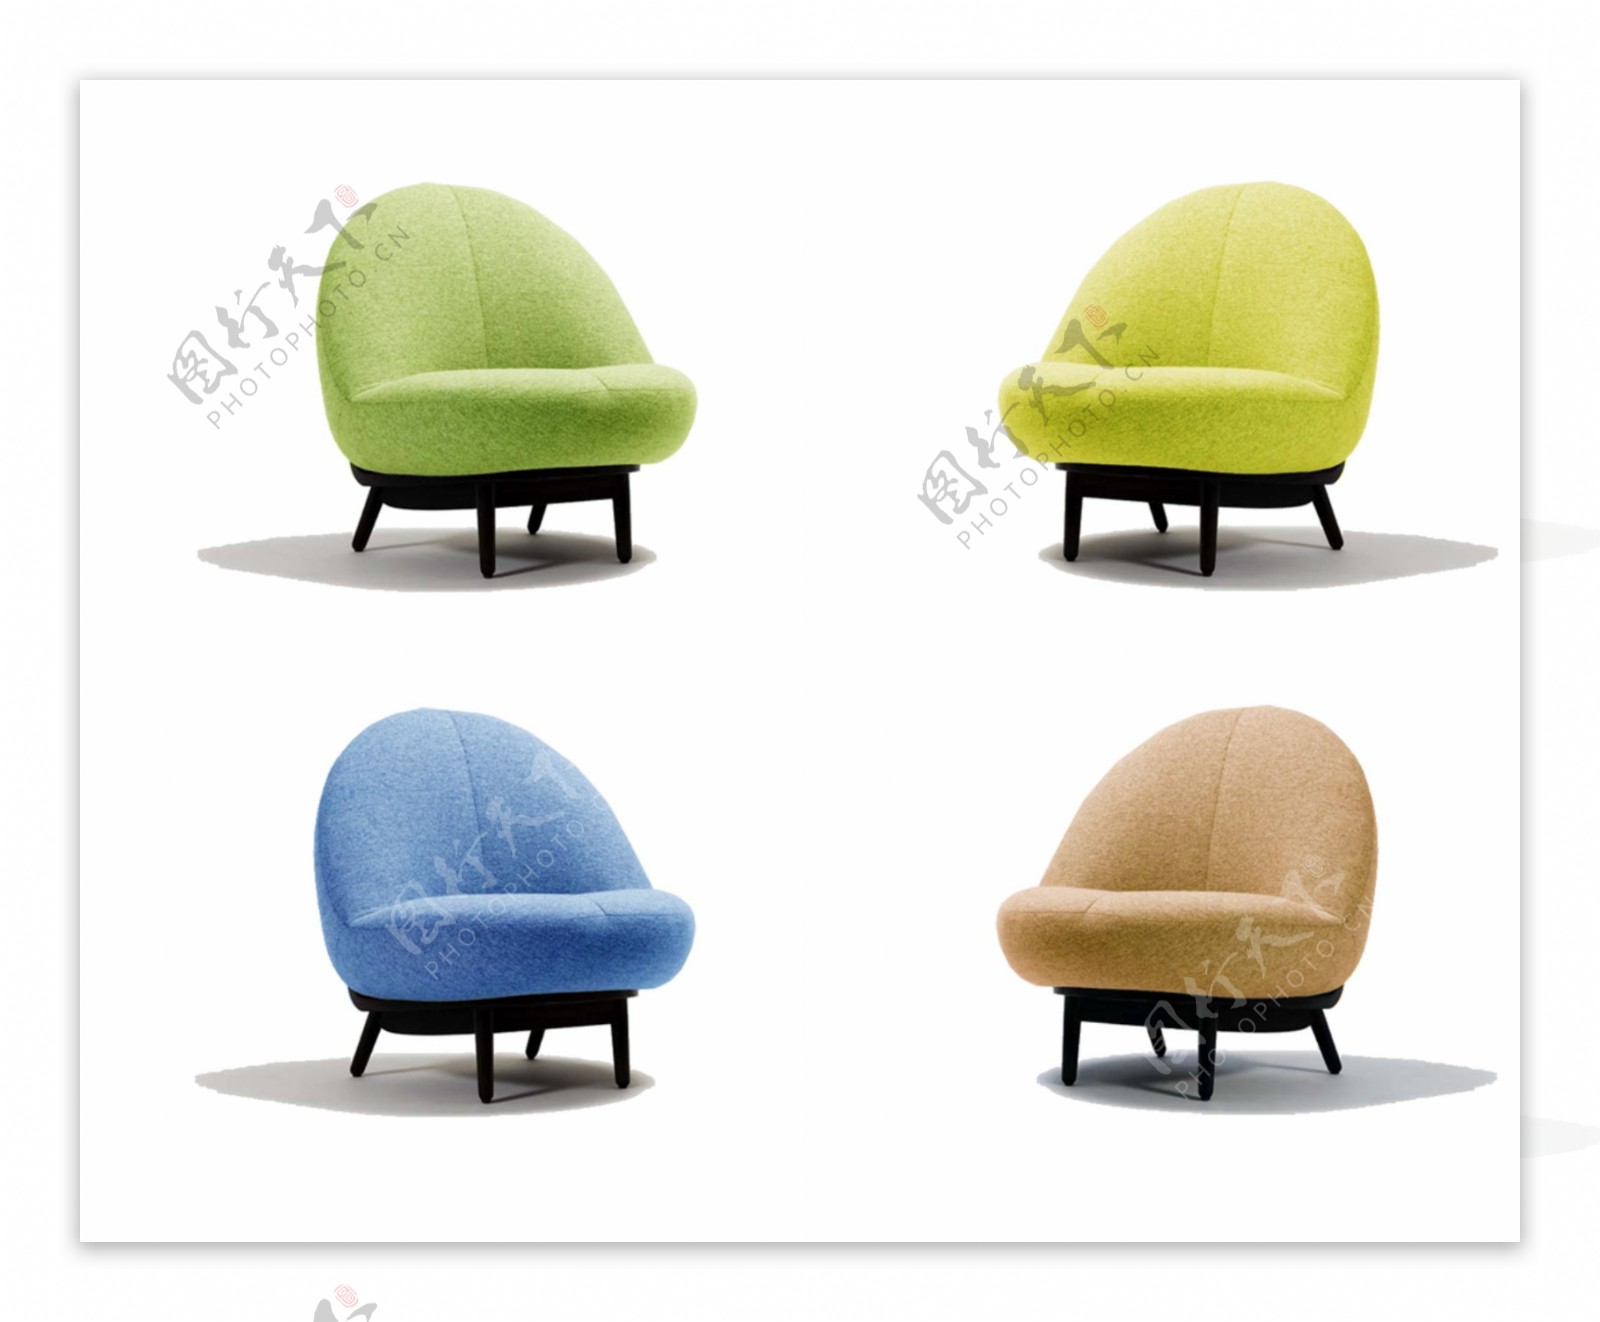 4色休闲椅